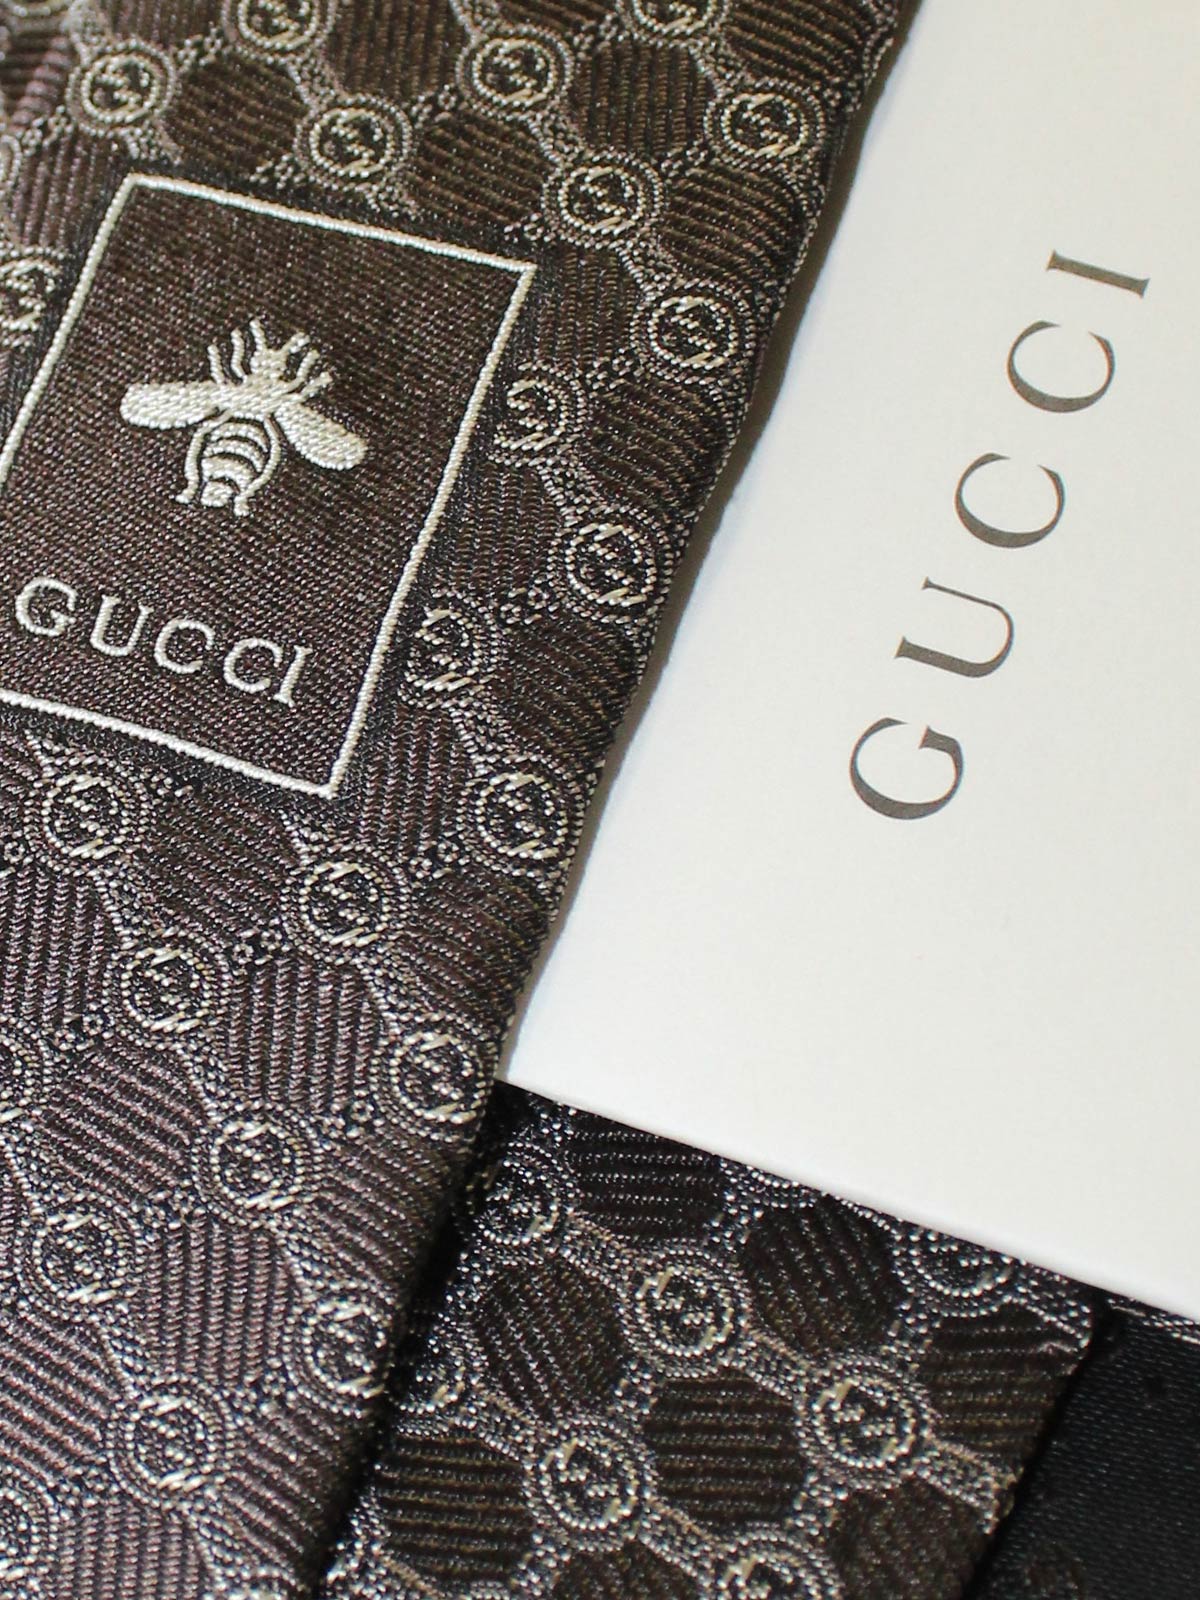 Gucci Debuts a Stunning Flagship #atMDD